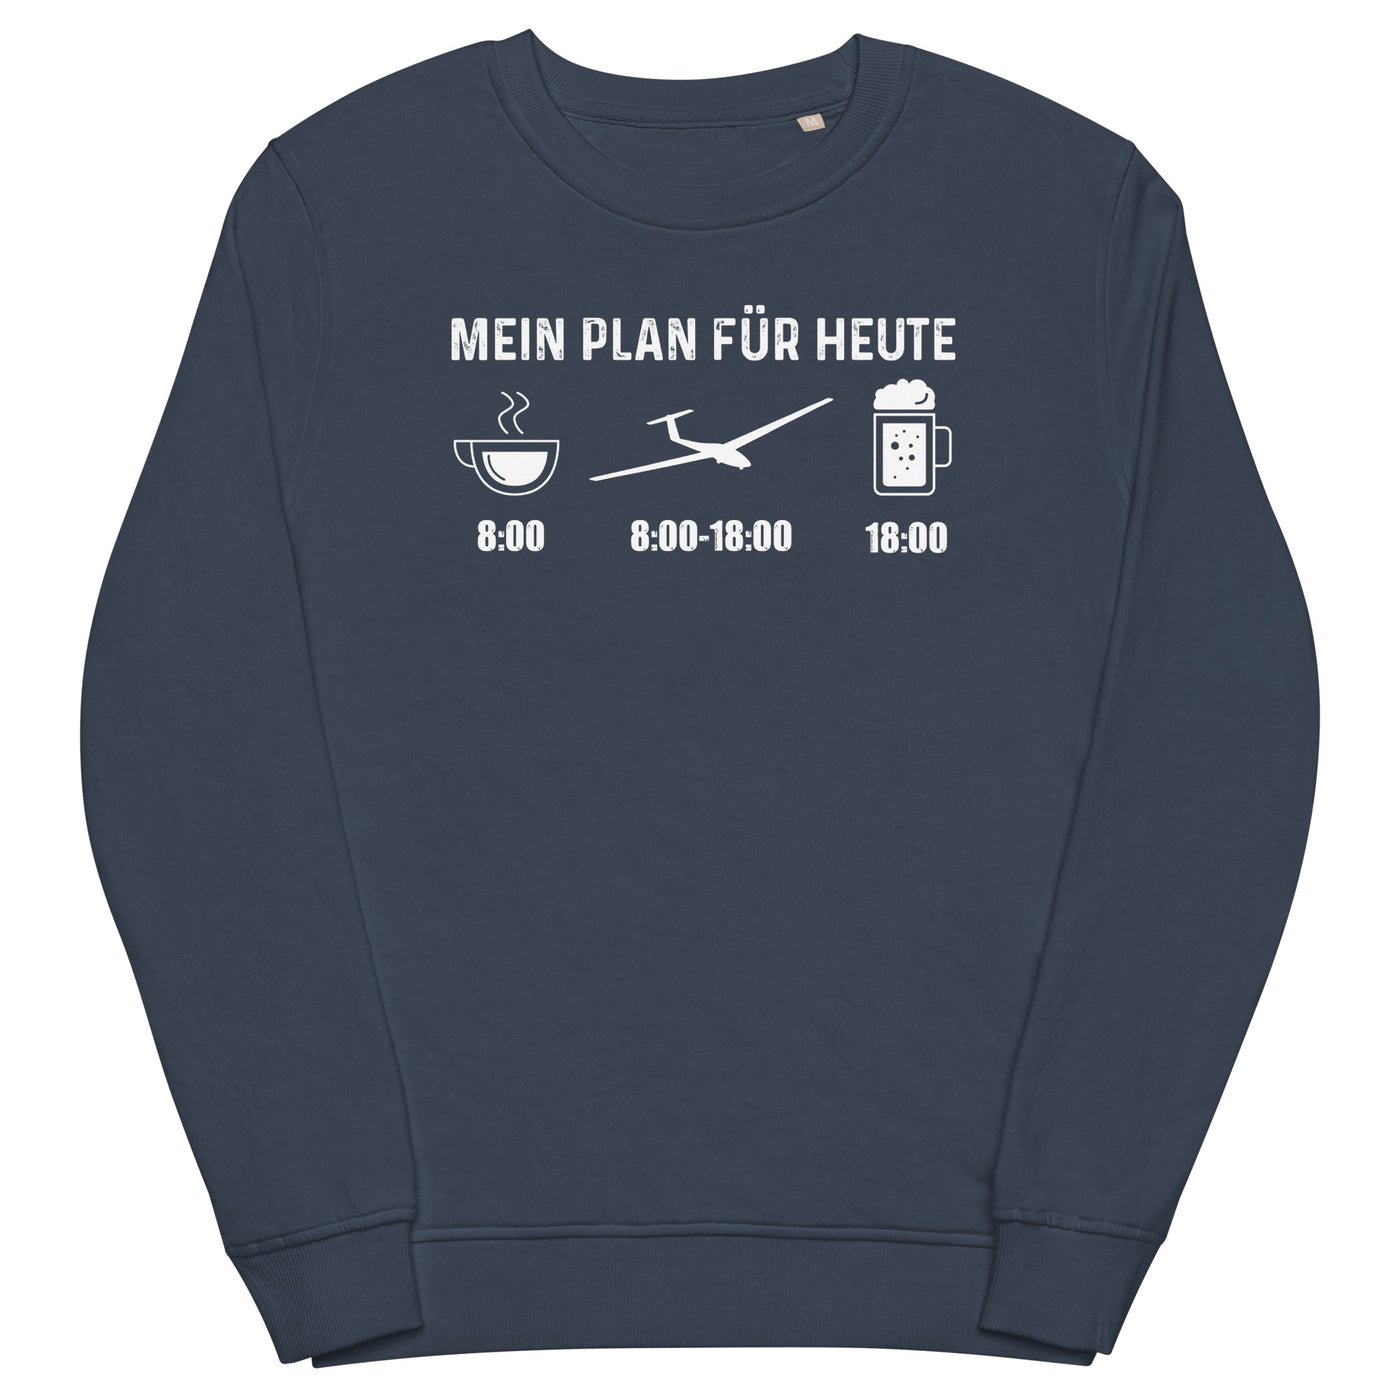 Mein Plan Für Heute - Unisex Premium Organic Sweatshirt berge xxx yyy zzz French Navy